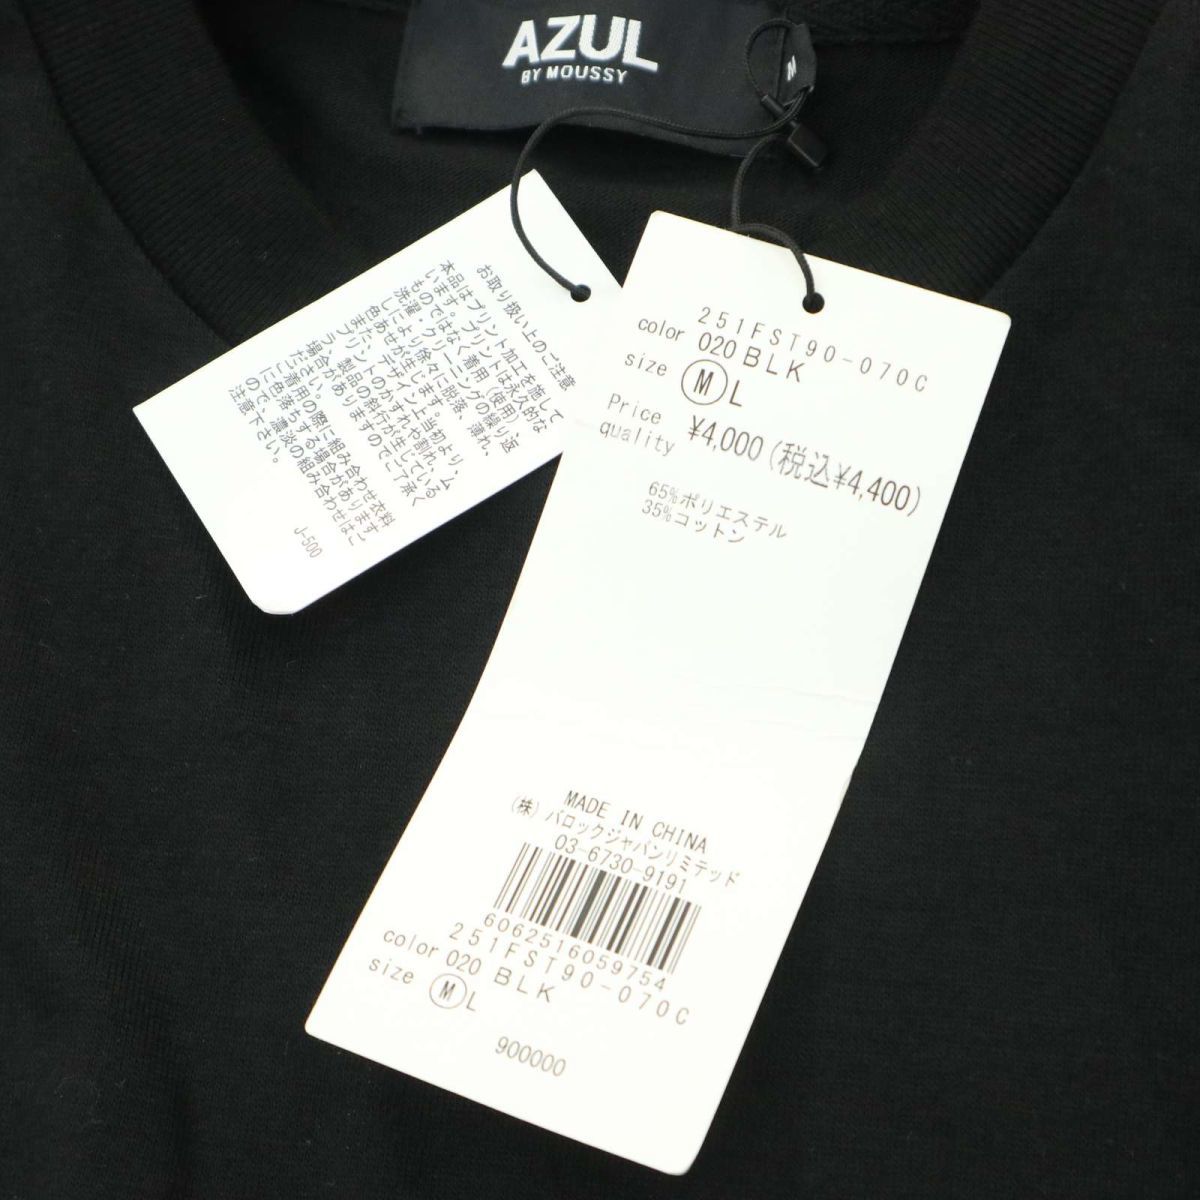  новый товар * AZUL by MOUSSY azur Moussy PASS THROUGH PHOTO TEE трикотажный джемпер с длинным рукавом футболка футболка Sz.M мужской чёрный A4T00632_1#F